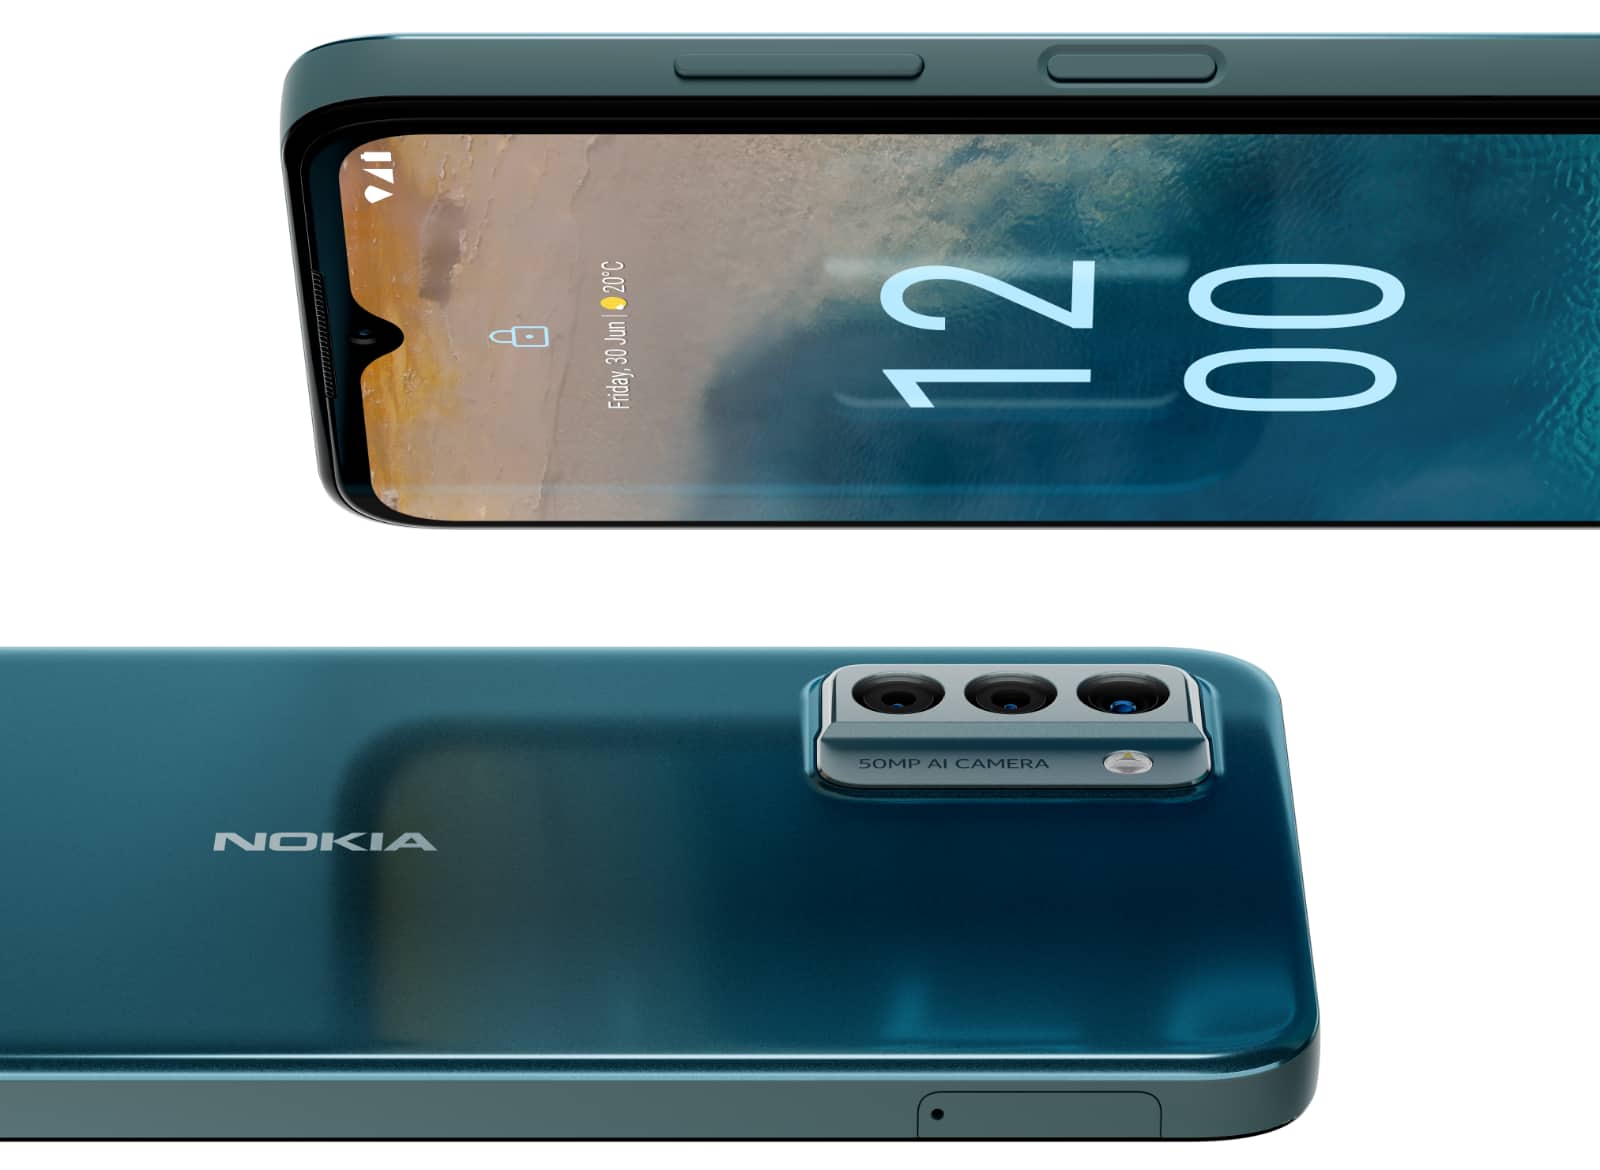 Bir sonraki Nokia telefonu tamamen pil ömrü ve tamir edilebilirlik ile ilgili – Pickr